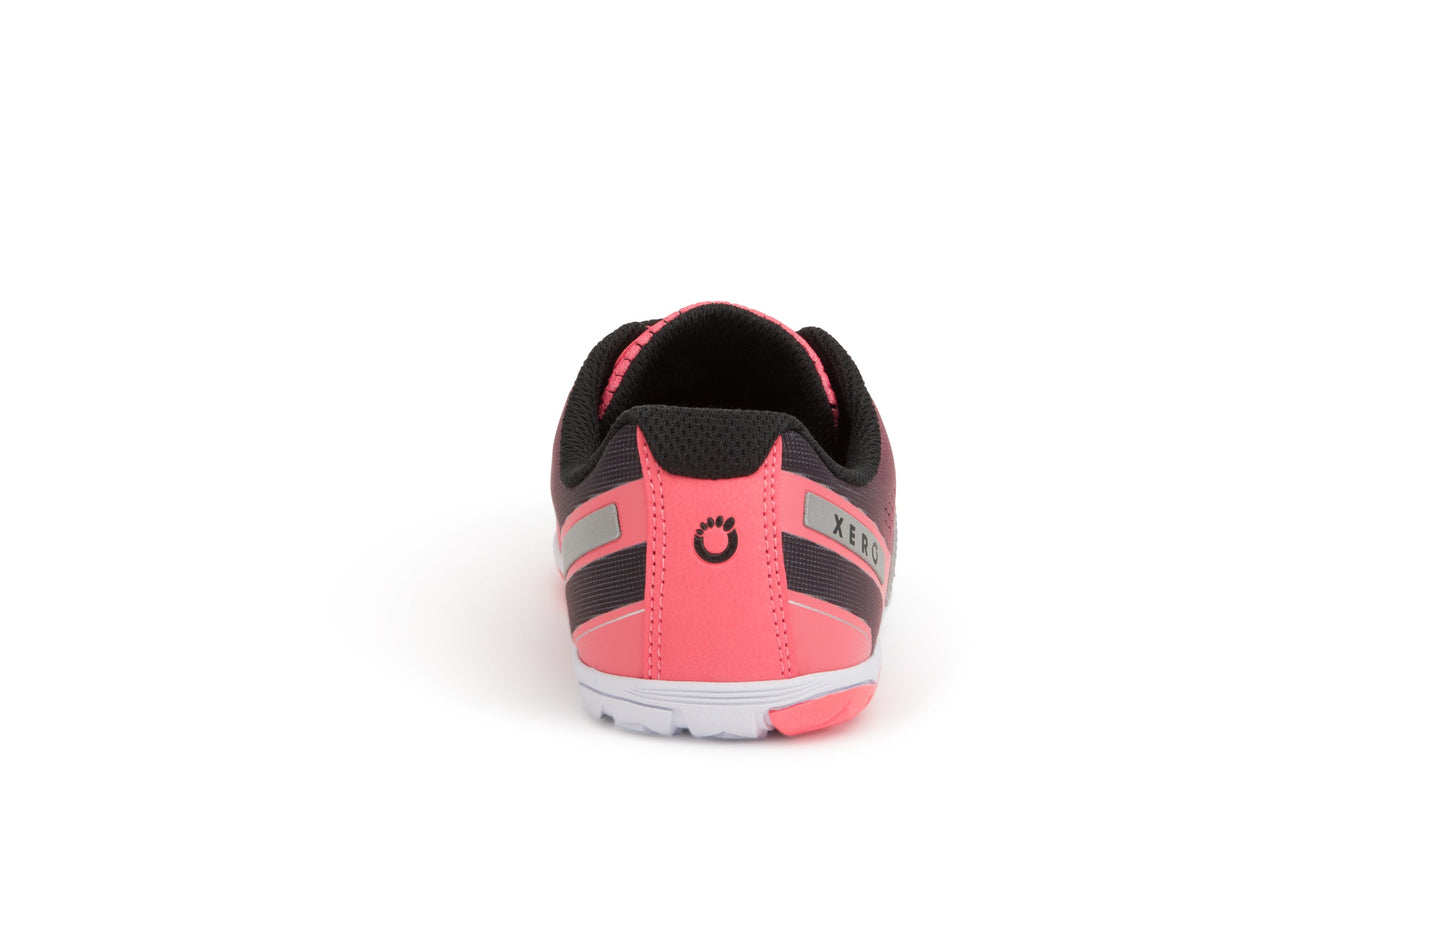 Xero Shoes HFS Womens barfods træningssko/løbesko til kvinder i farven coral hush, bagfra